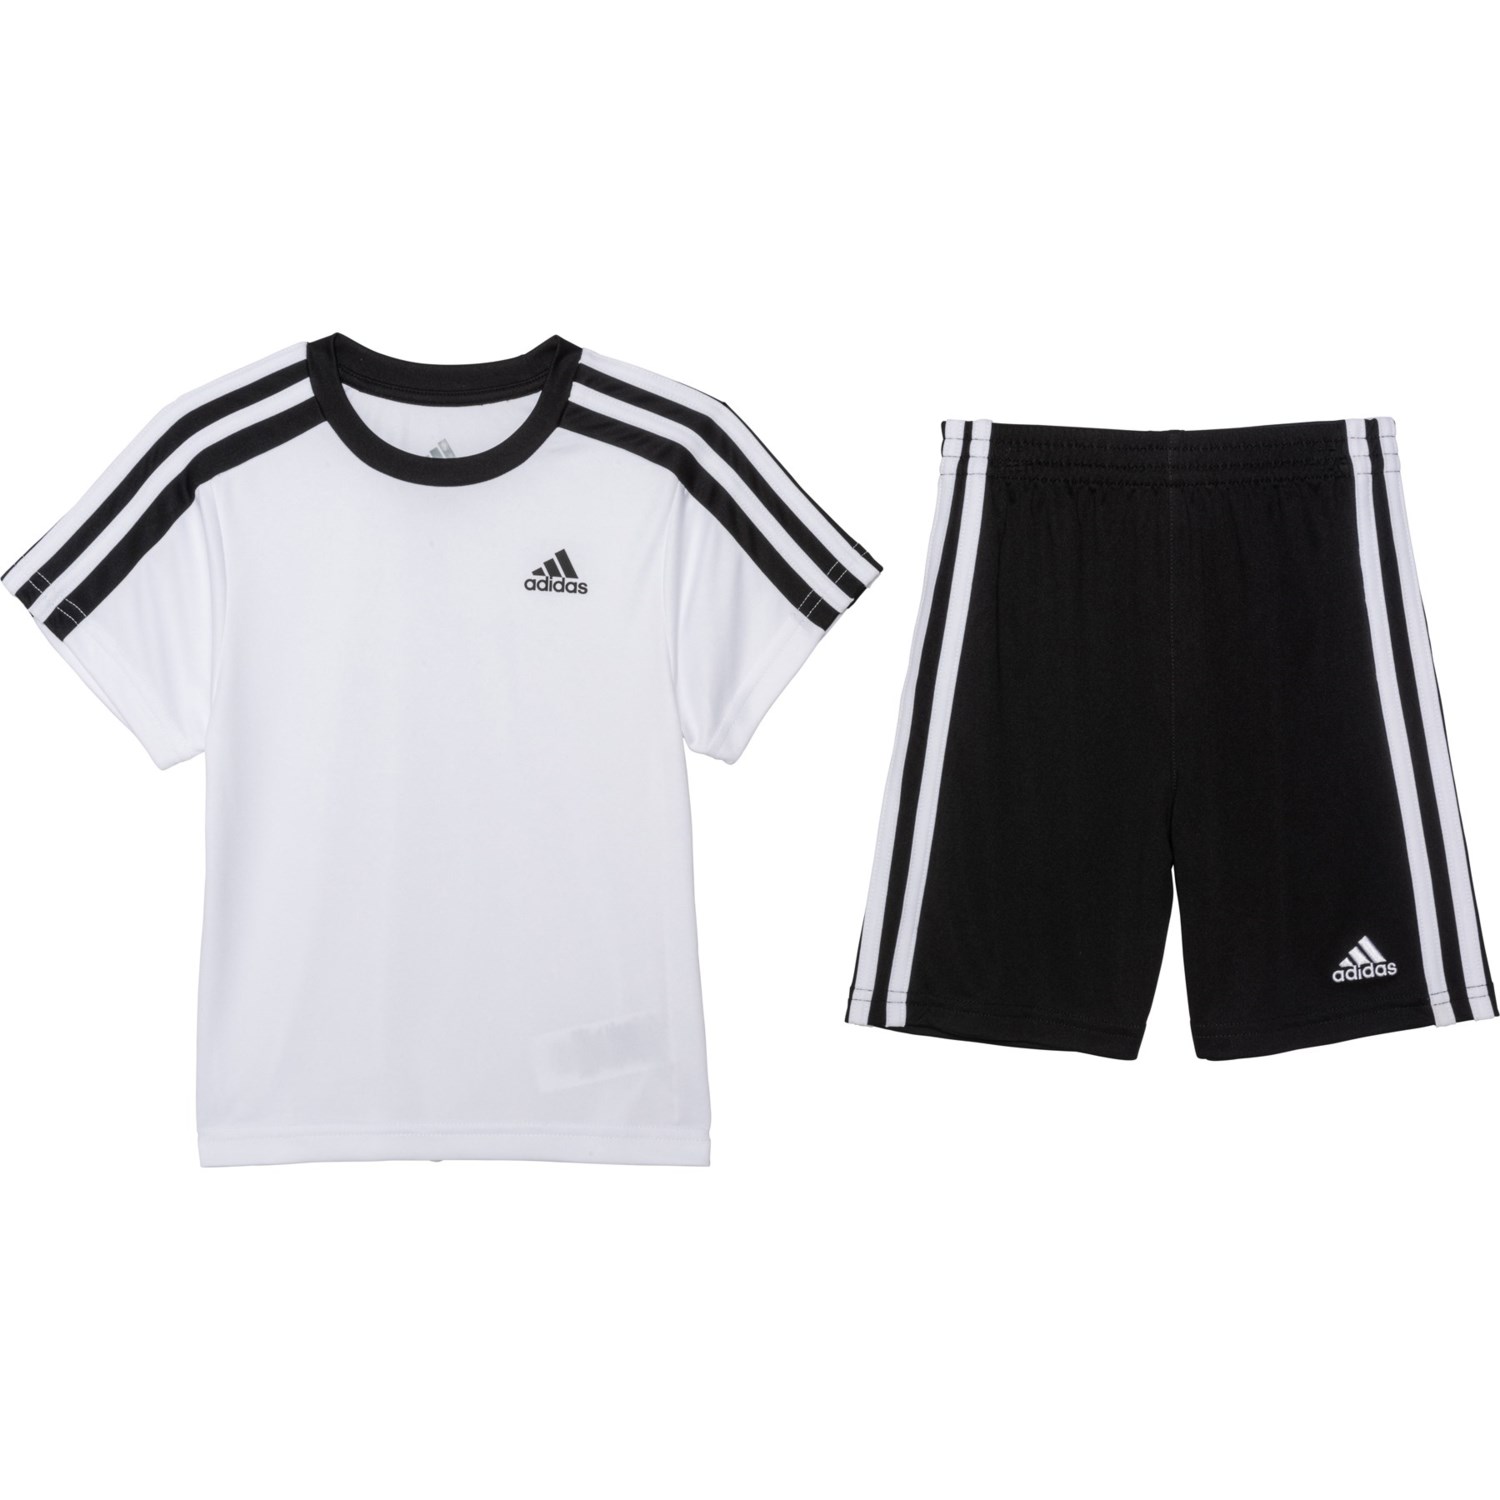 adidas Soccer T-Shirt and Shorts Set 